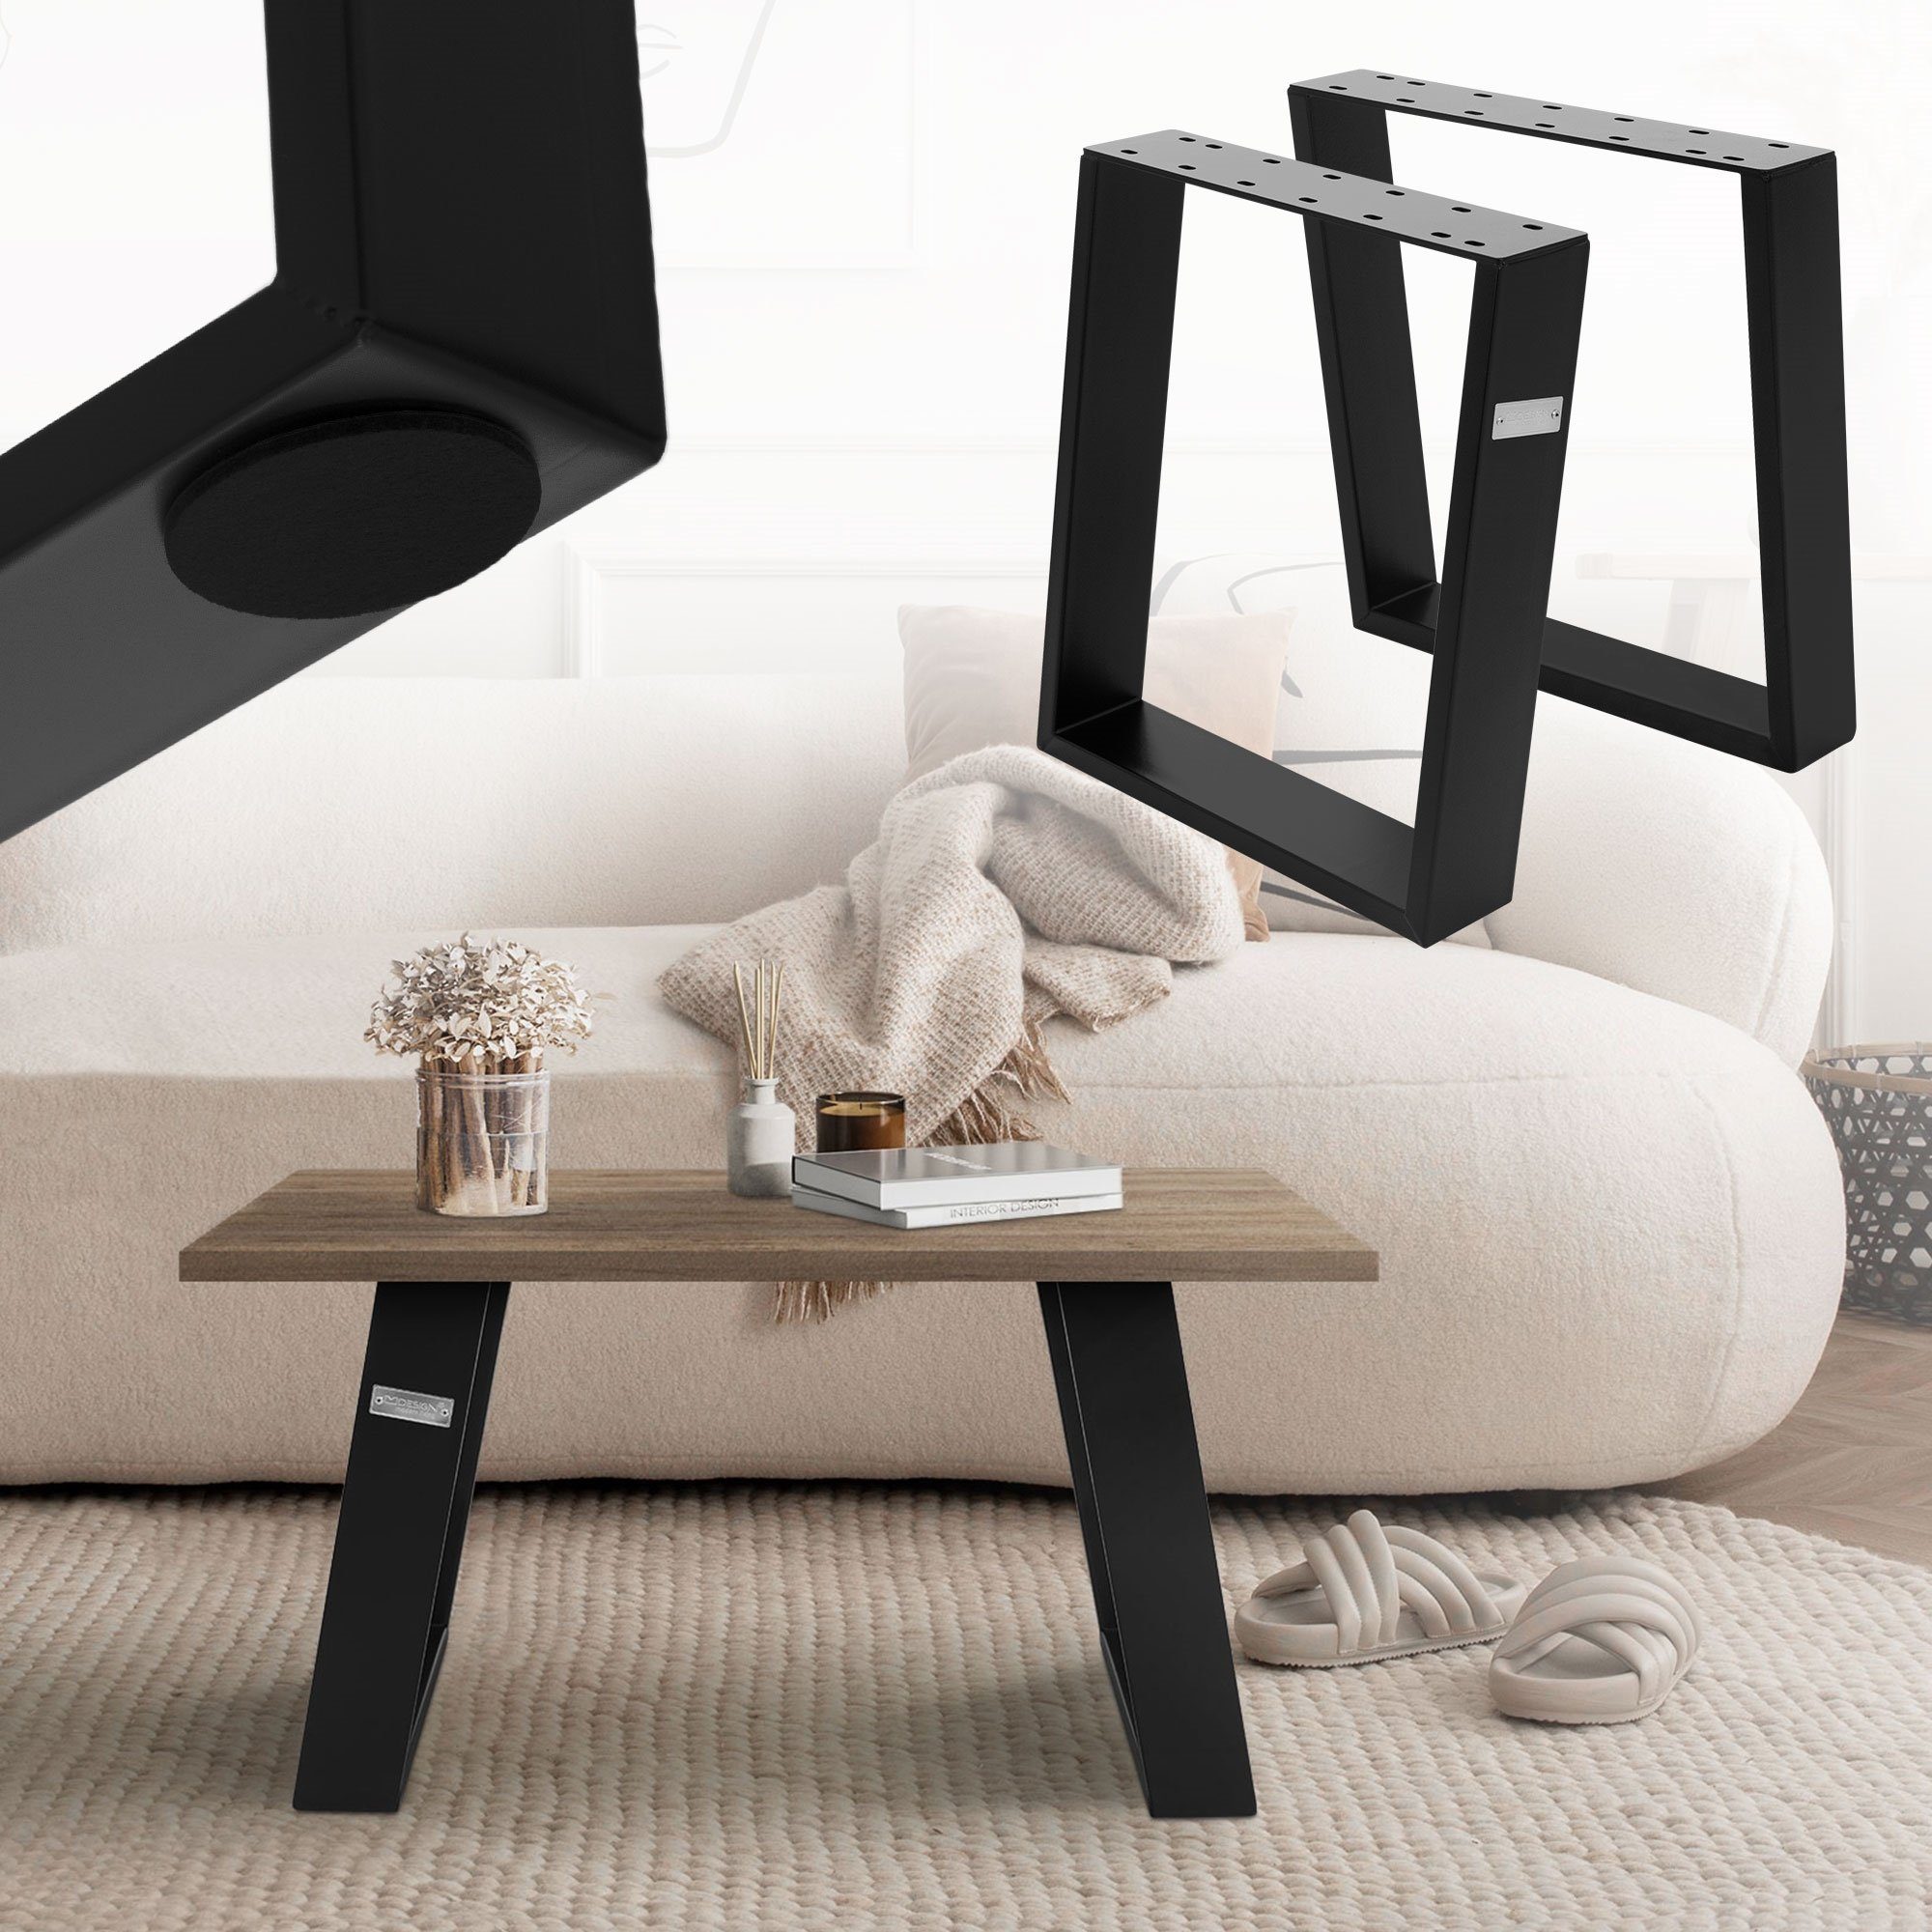 ML-DESIGN Tischbein Möbelkufen Tischgestell Tischuntergestell Möbelfüße für Couchtisch, 2er Set 80GRAD Neigung 40x43cm Schwarz aus Stahl geneigt | Tischbeine